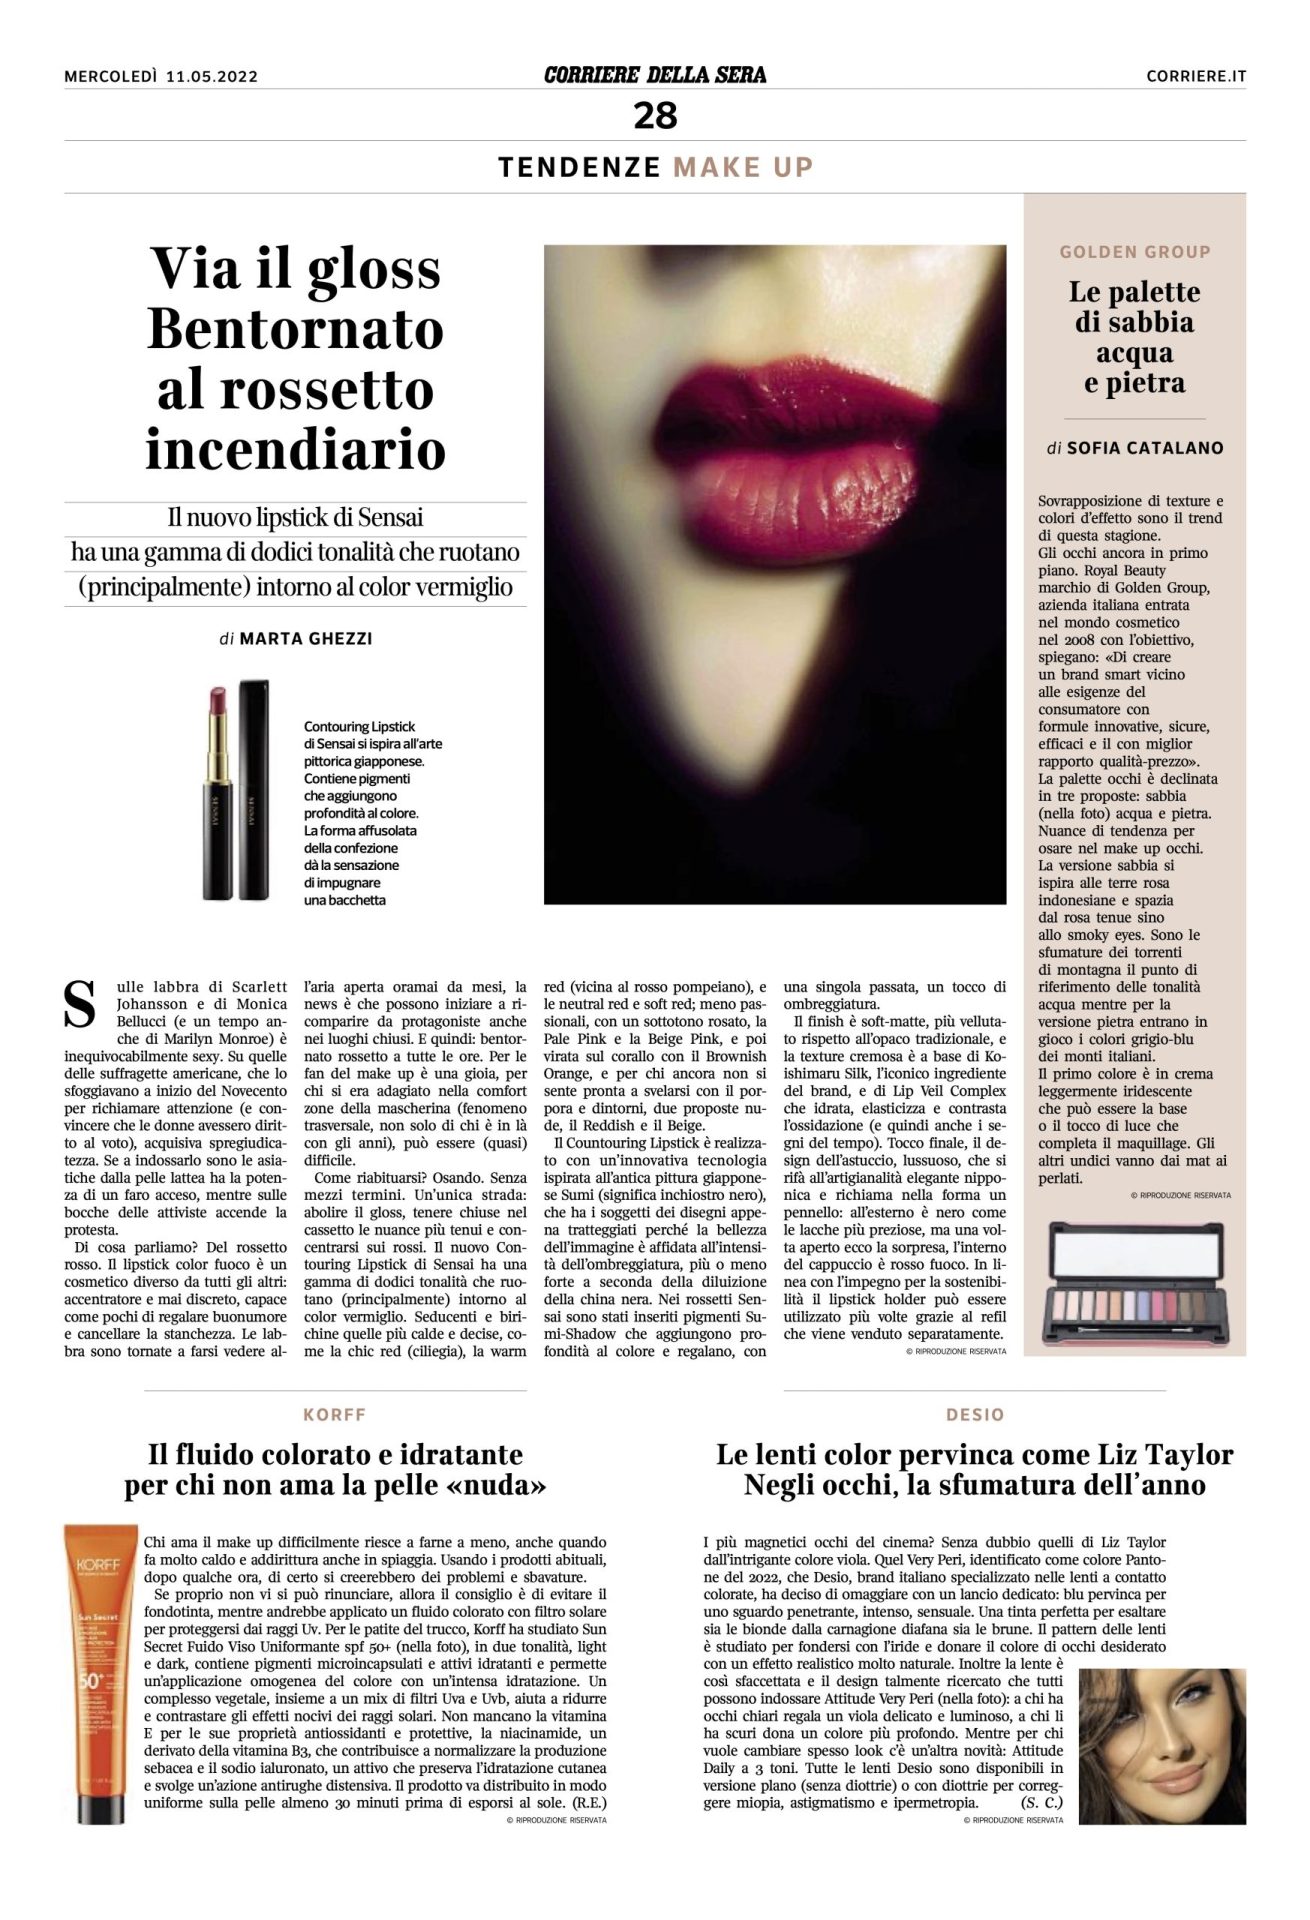 Corriere della Sera – Tendenze make up con le palette Royal Beauty – 11/05/2022